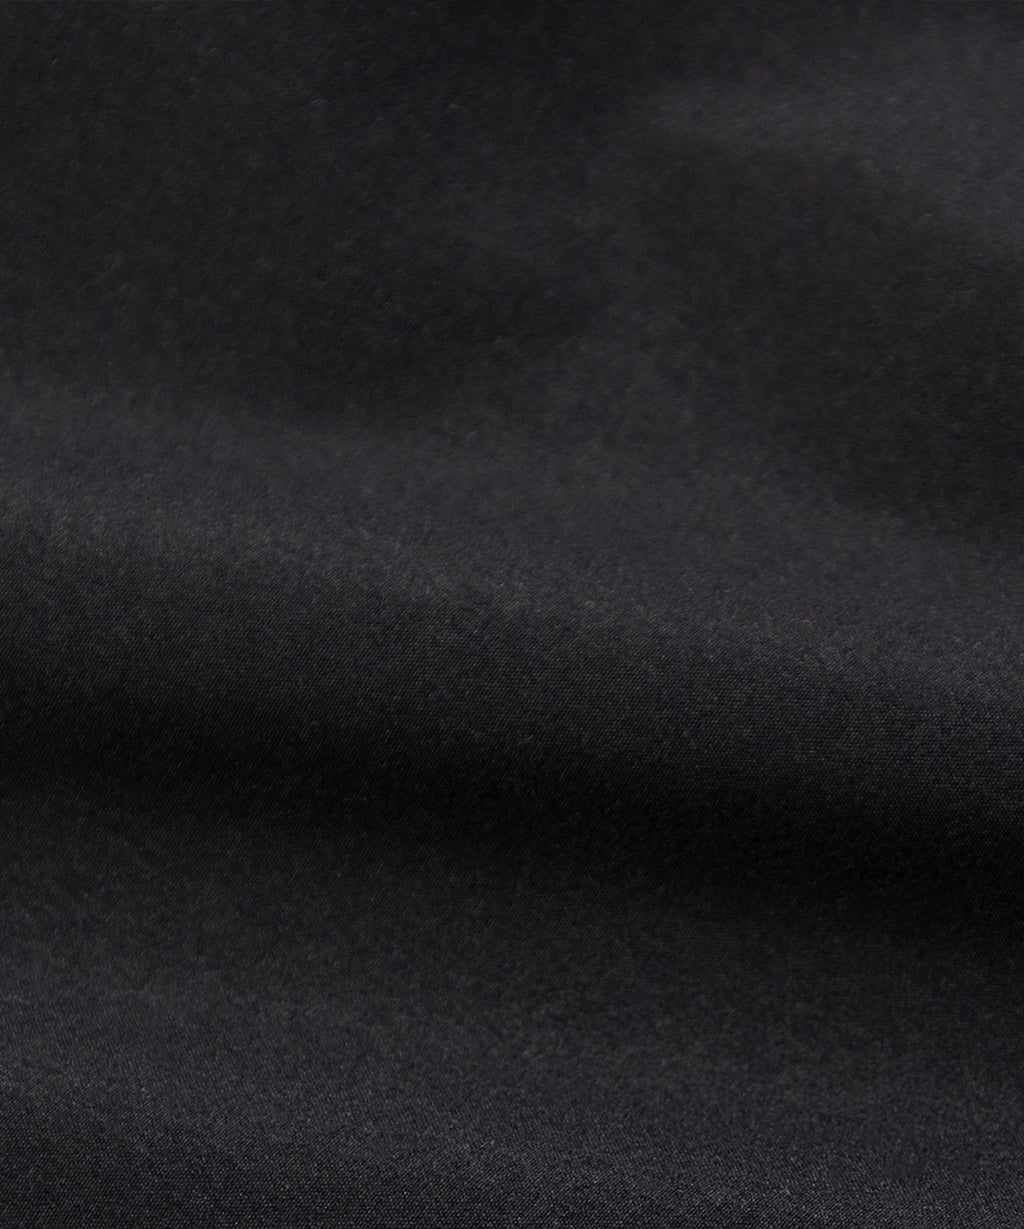  Fabric closeup on Paper Planes Cotton Touch Explorer’s Cargo Pant, color Black.